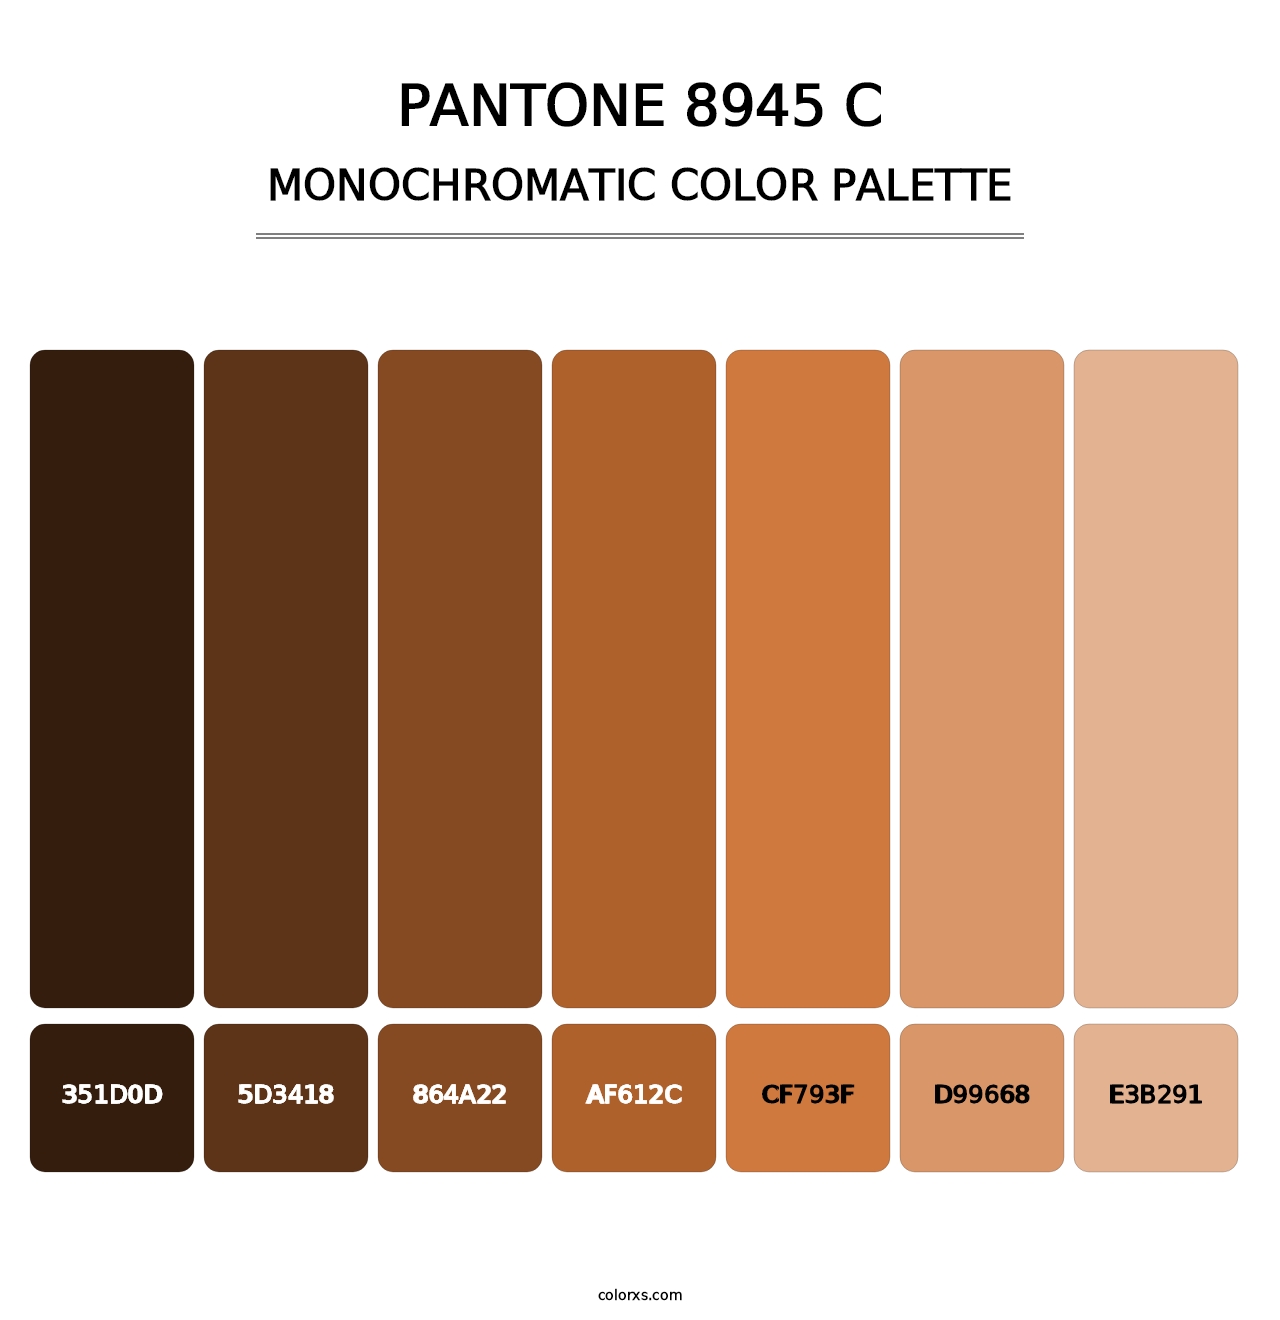 PANTONE 8945 C - Monochromatic Color Palette